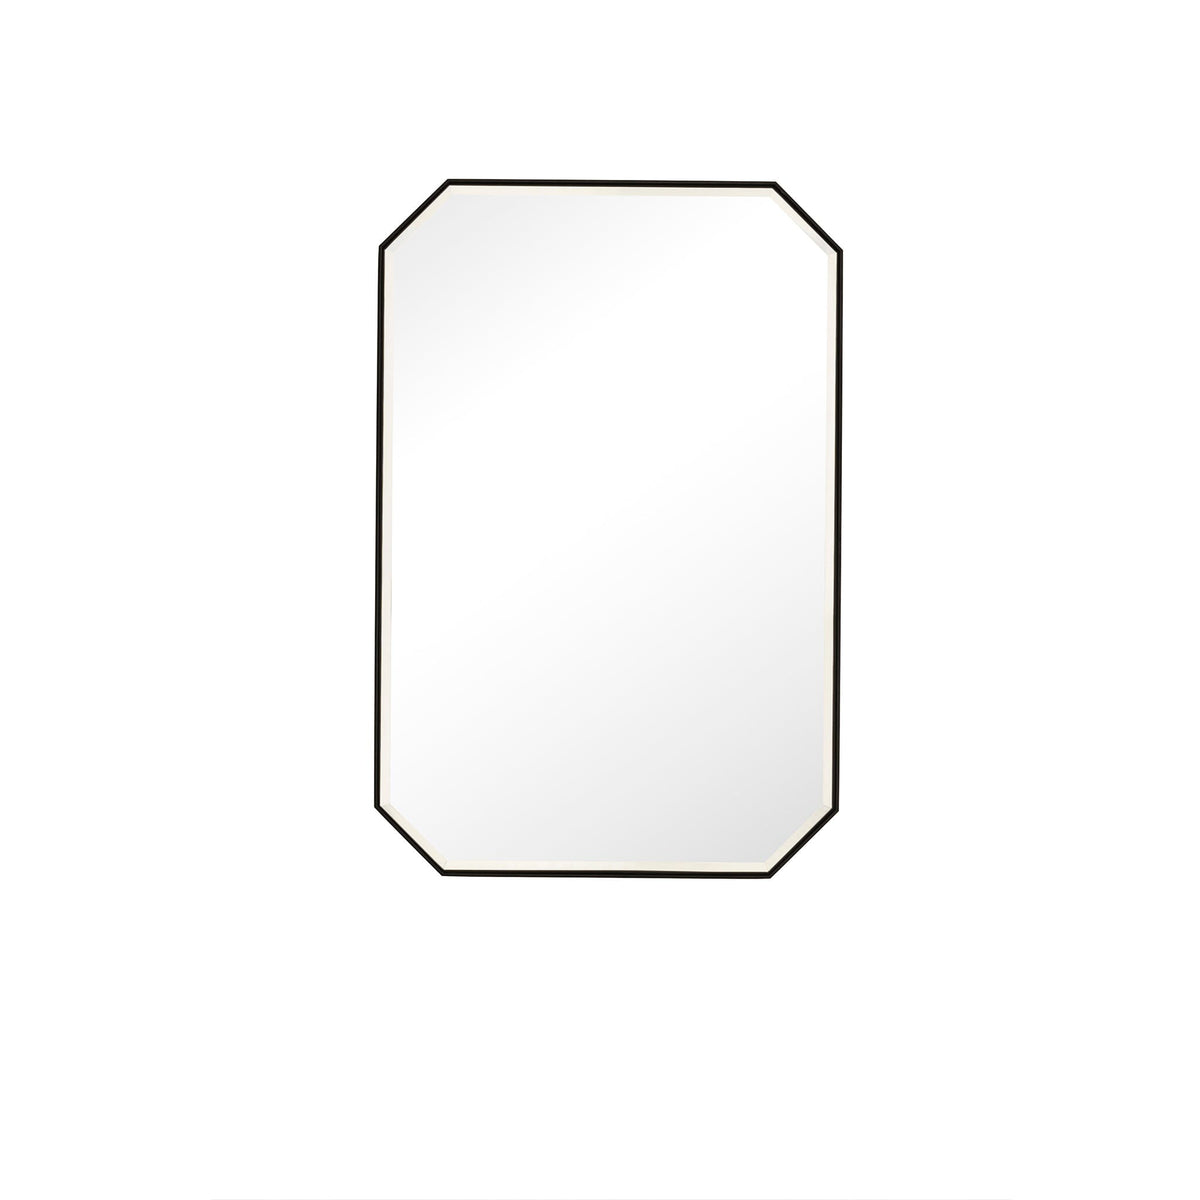 24" Rohe Octagon Mirror, Matte Black